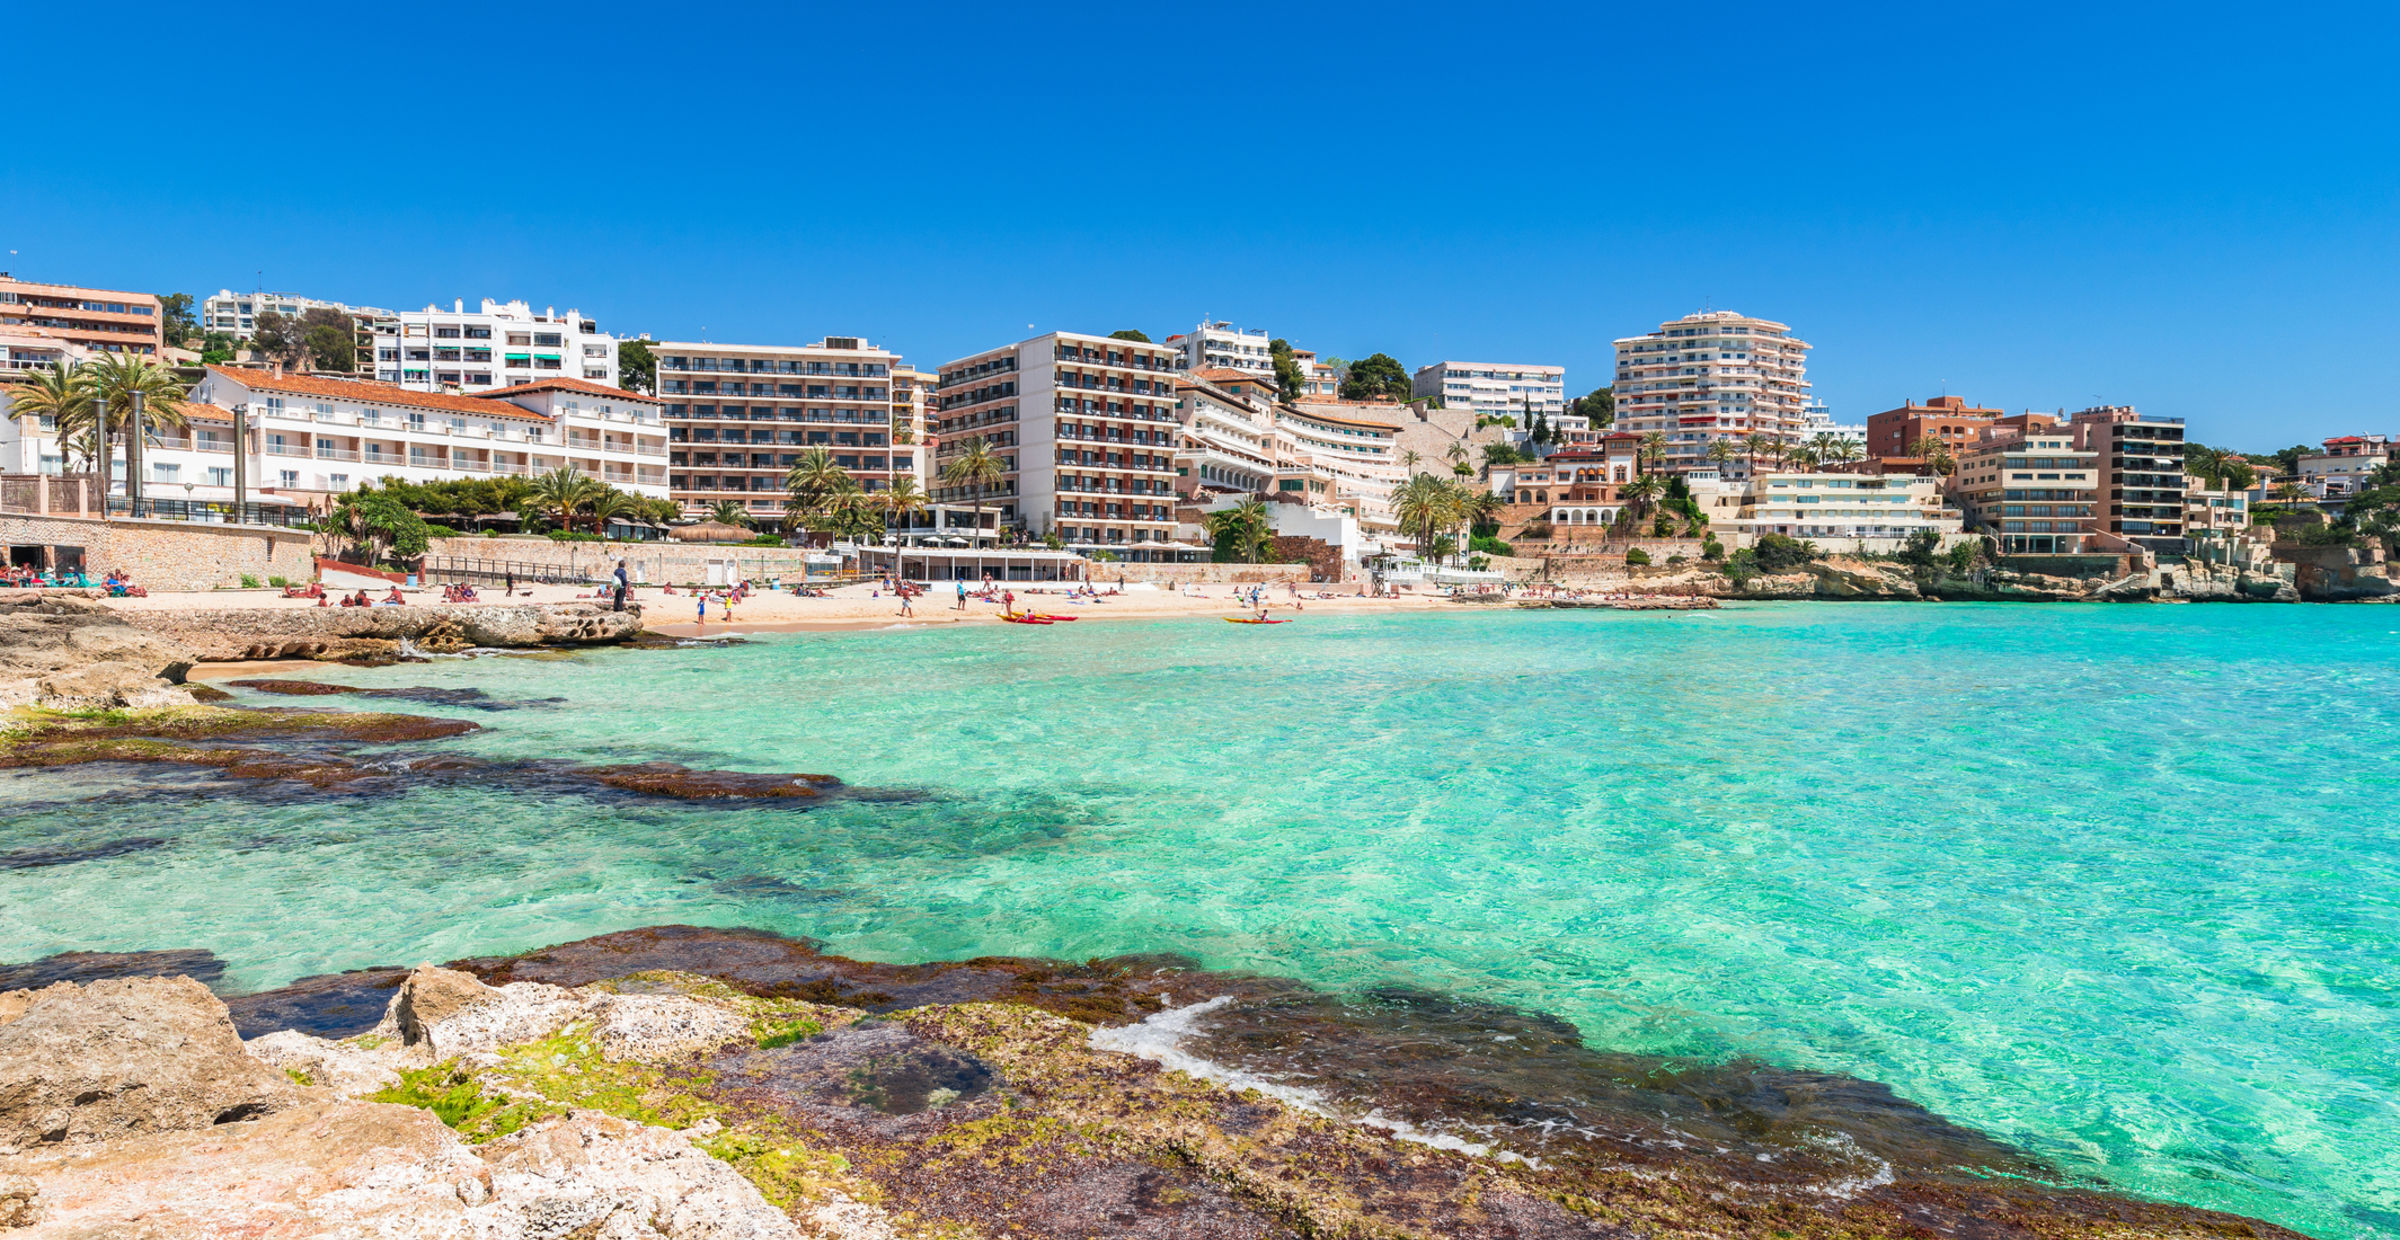 Hitta hotell i Cala Mayor, Mallorca